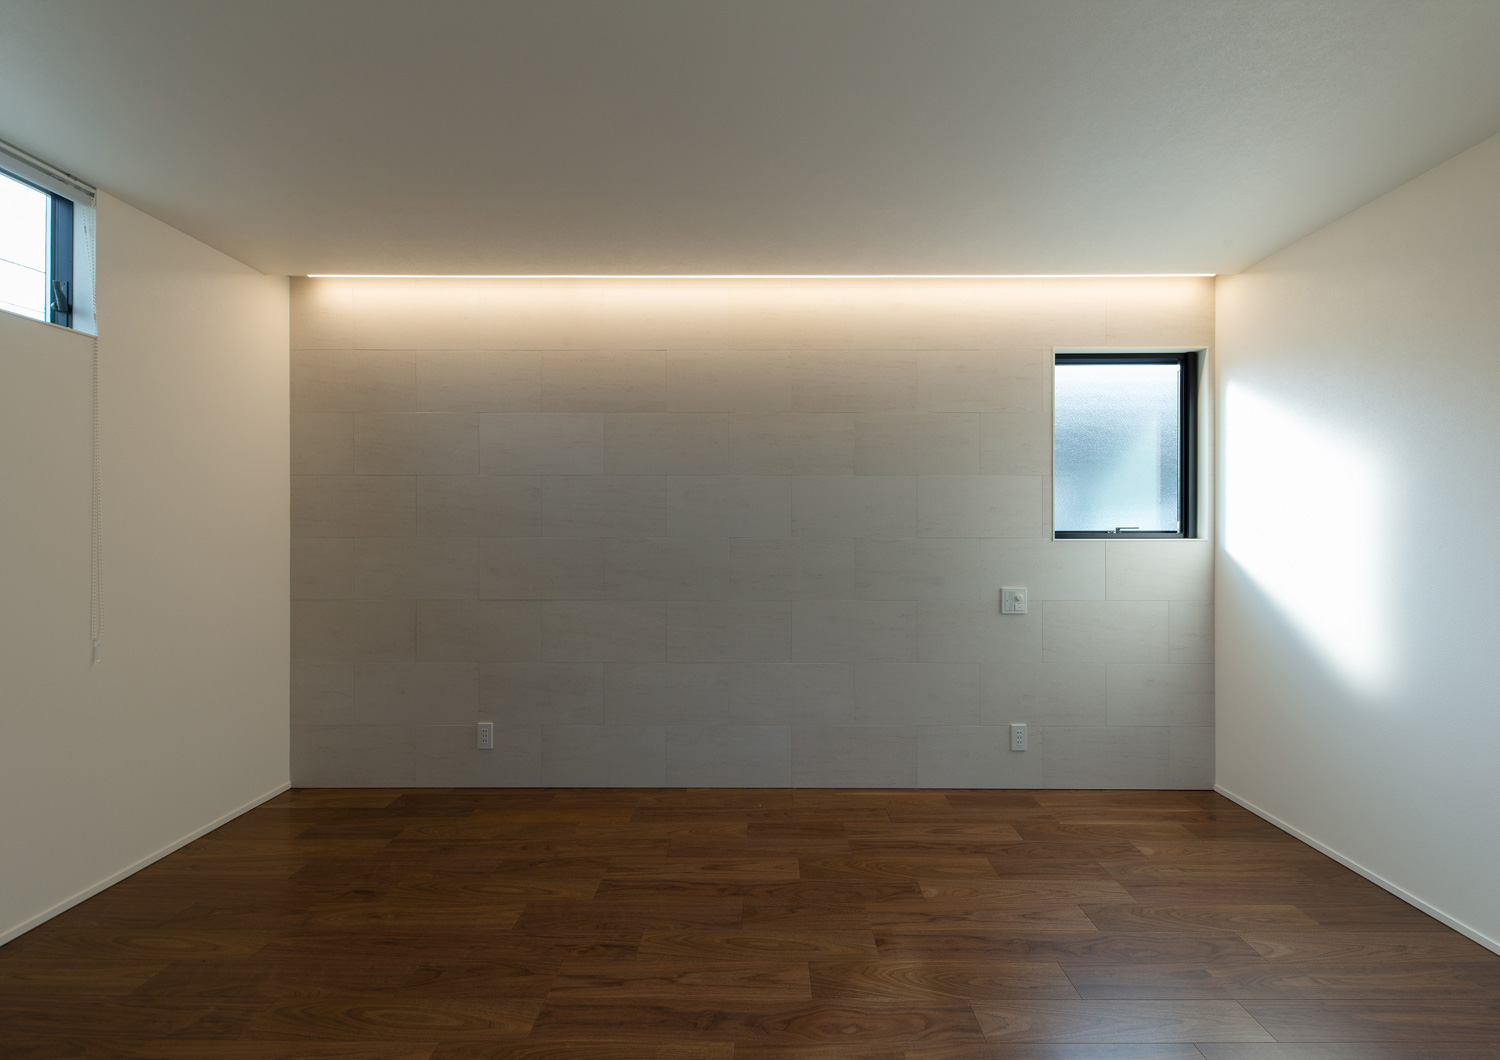 壁際に間接照明を取り付けた、小さい窓のある部屋・デザイン住宅